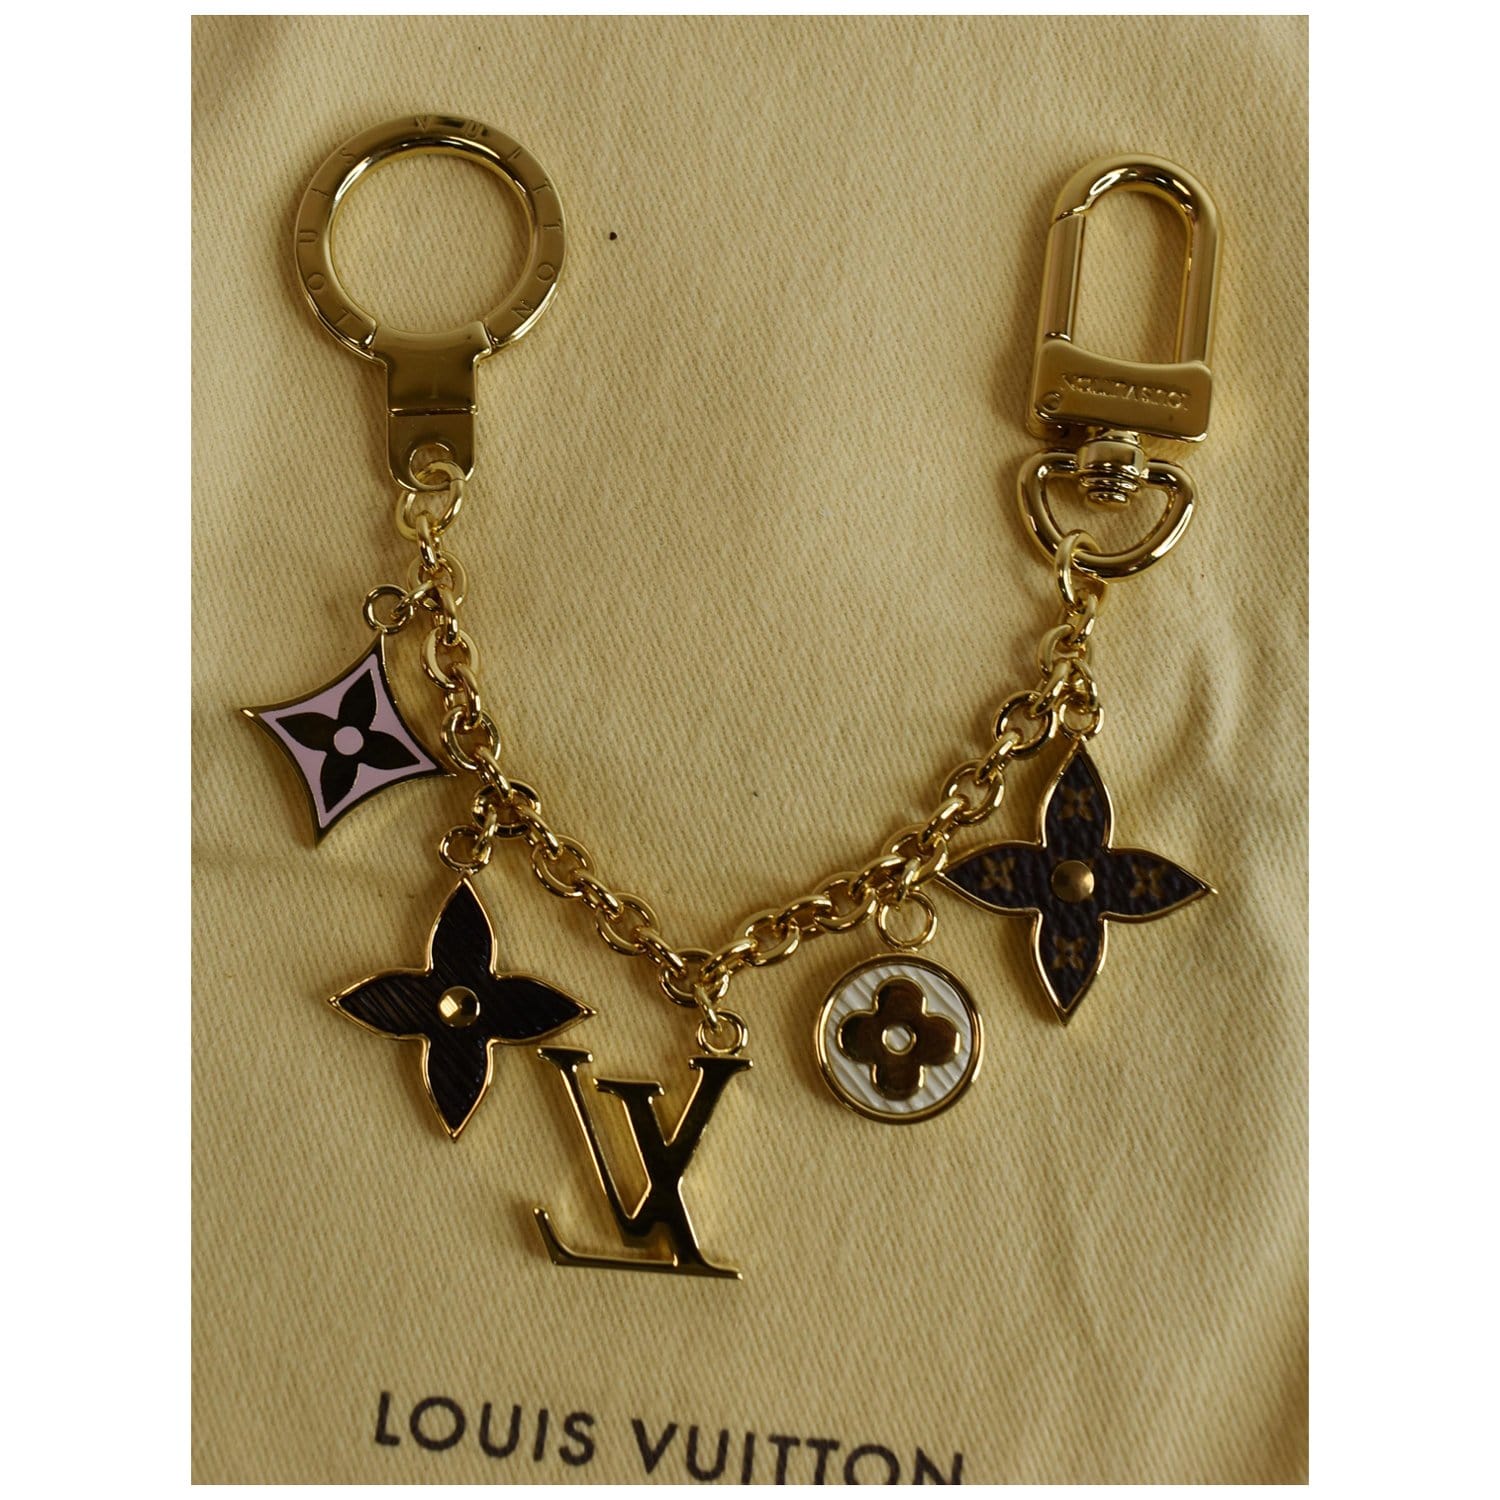 Louis Vuitton Bag Charm Chain Fleur